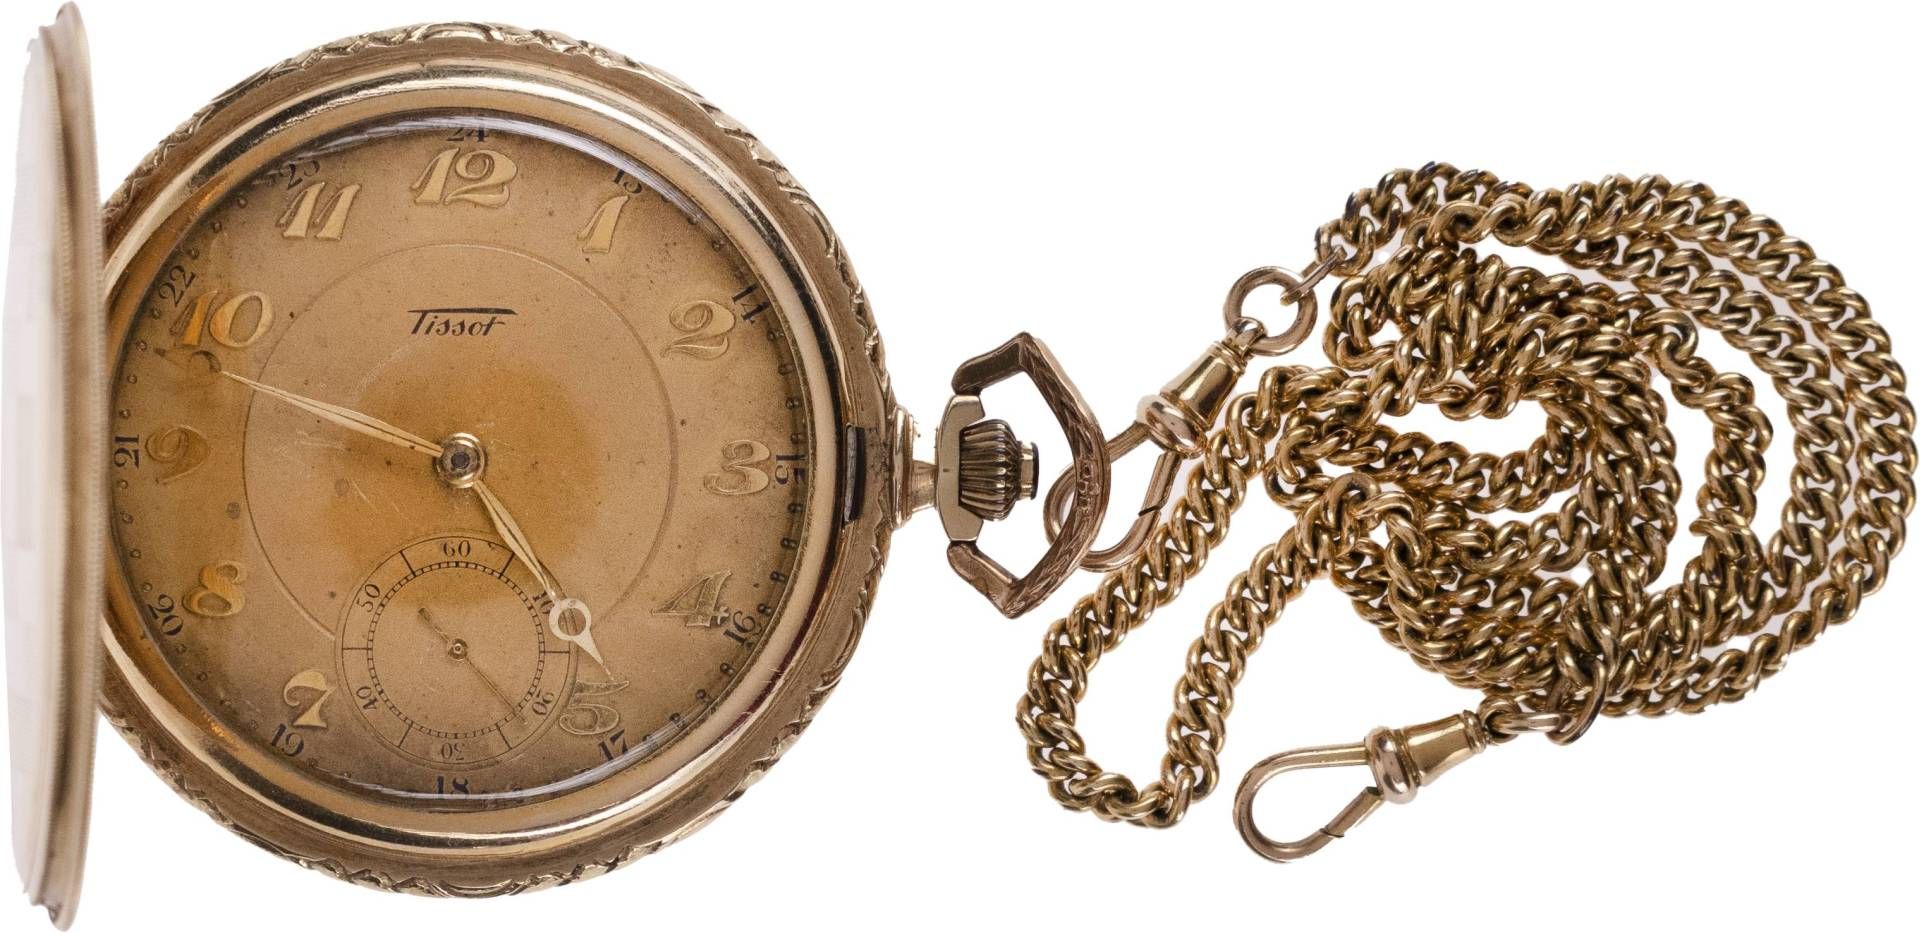 Tissot Locle Taschenuhr. Ca. 51mm, 585er Gold, Handaufzug. Champgnerfarbenes Ziffernblatt mit - Image 2 of 4